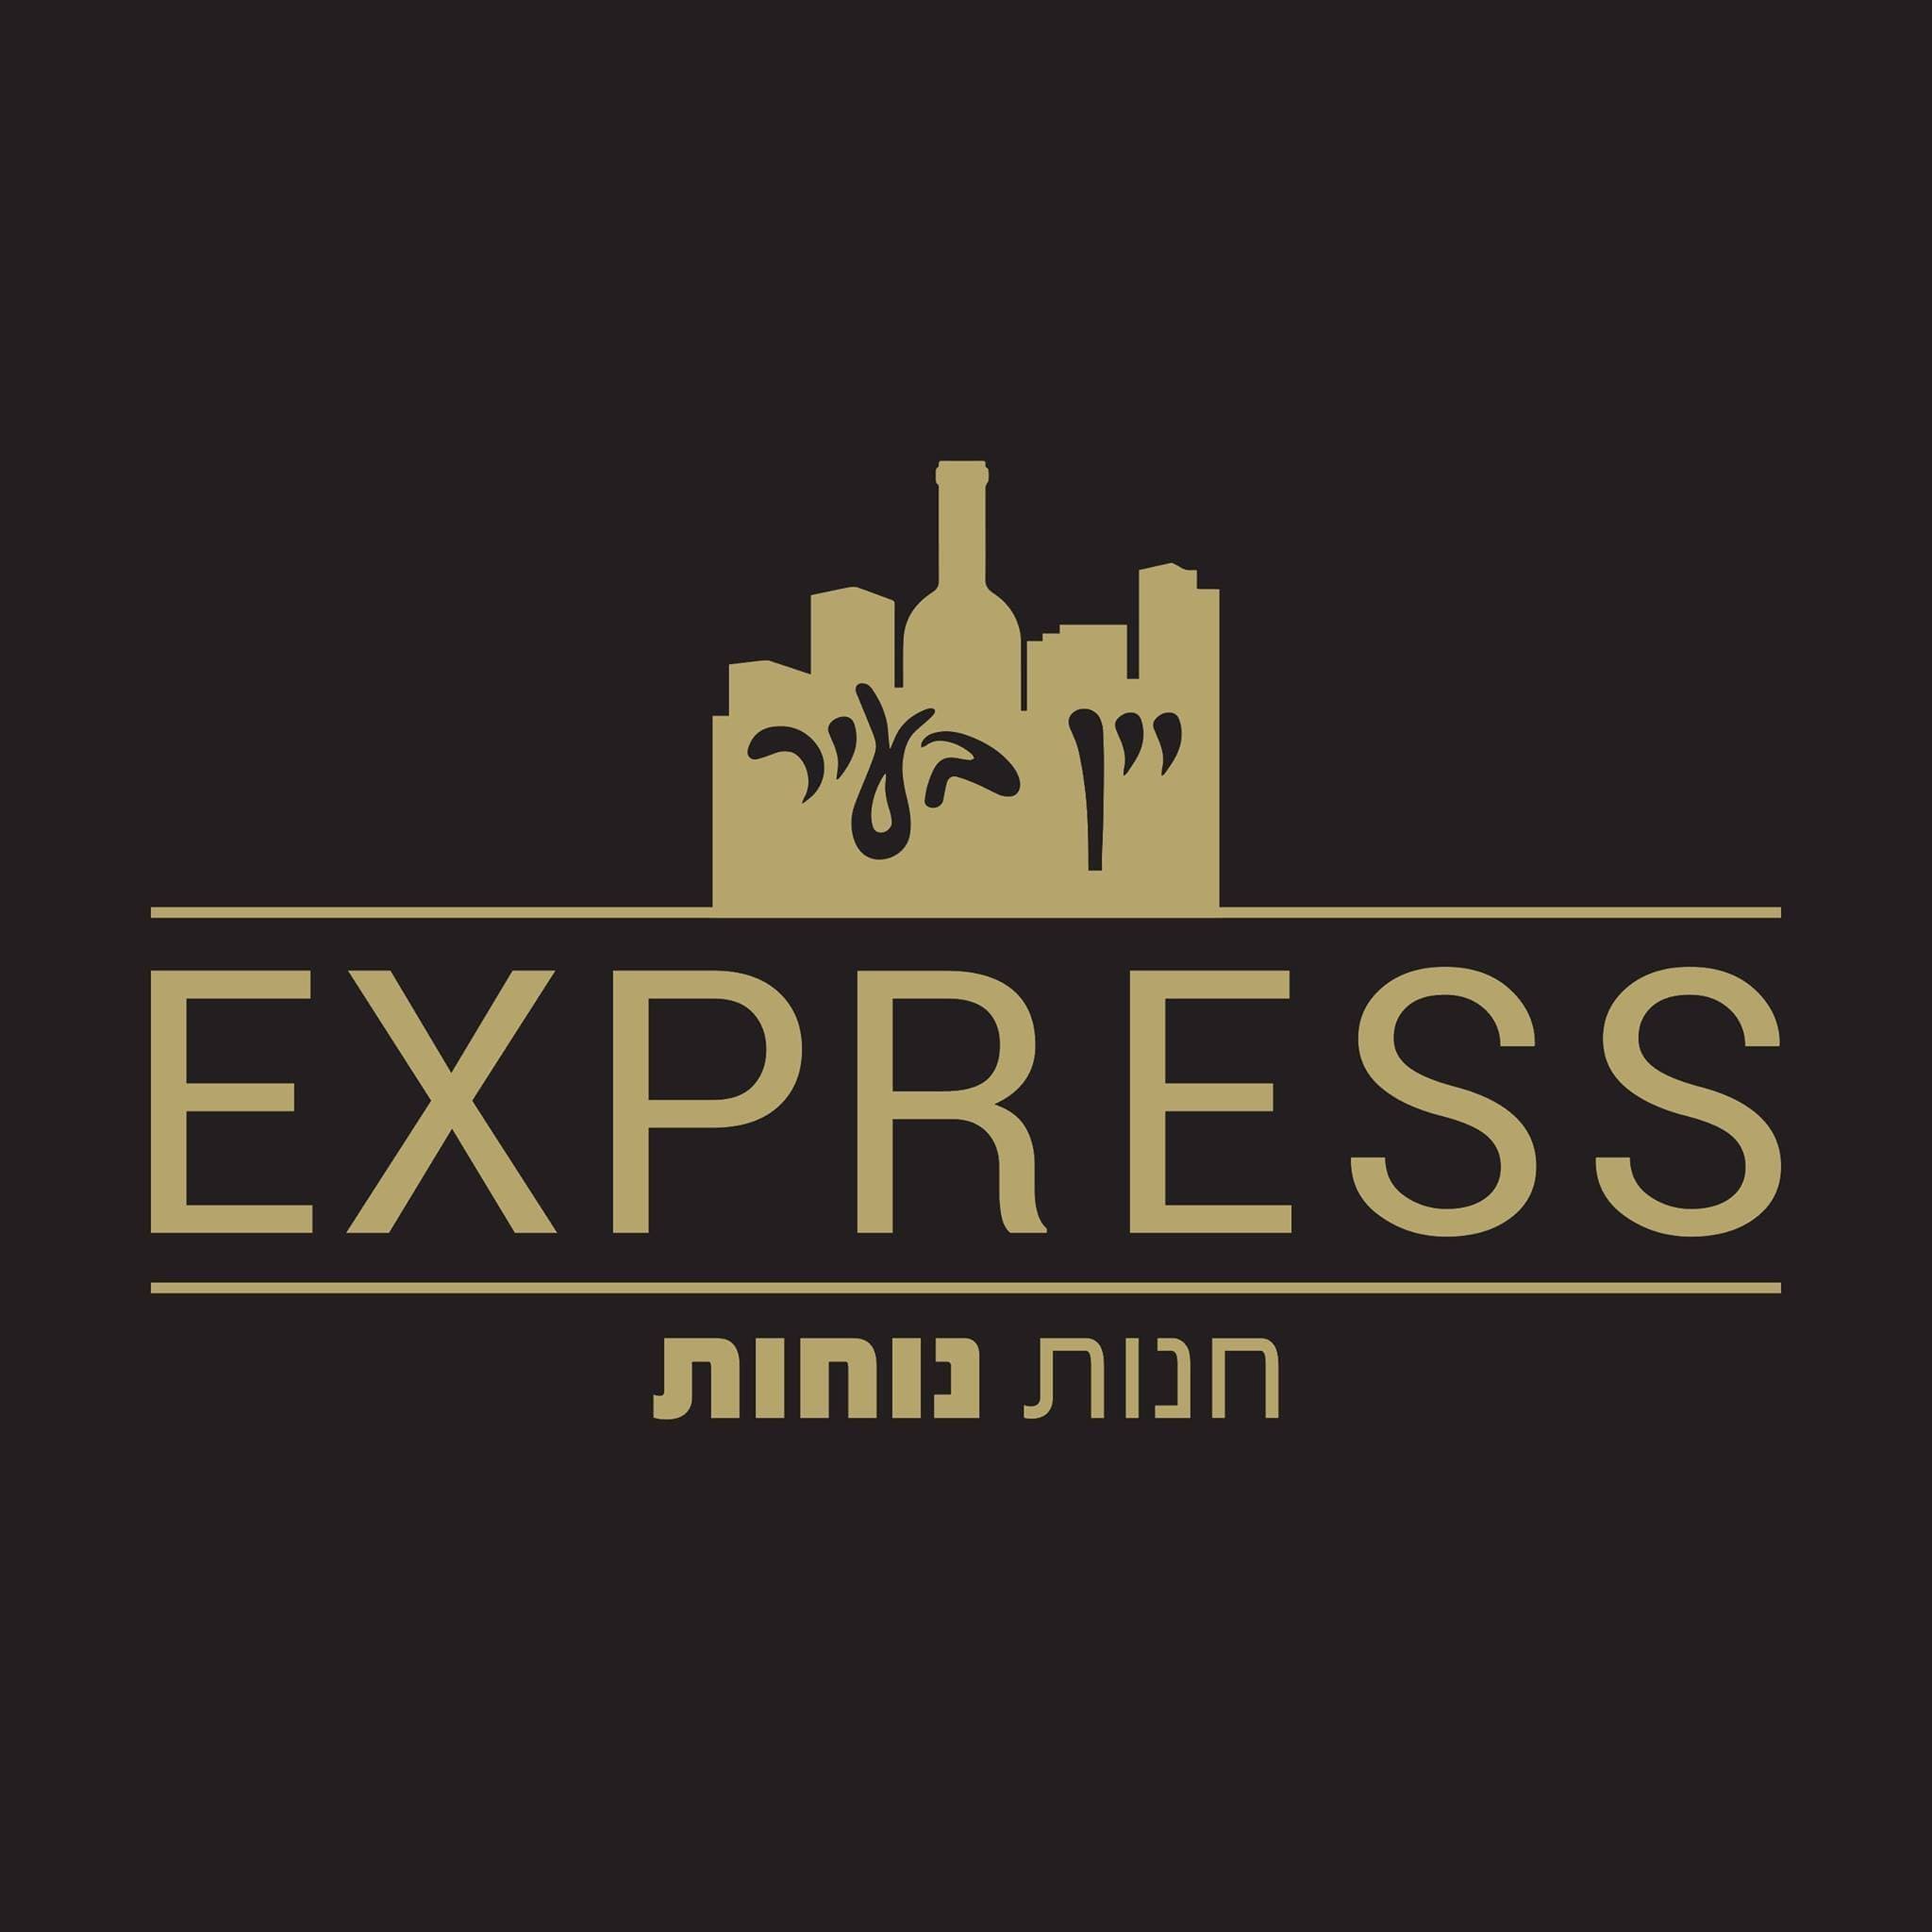 יין בעיר express-רמת גן image